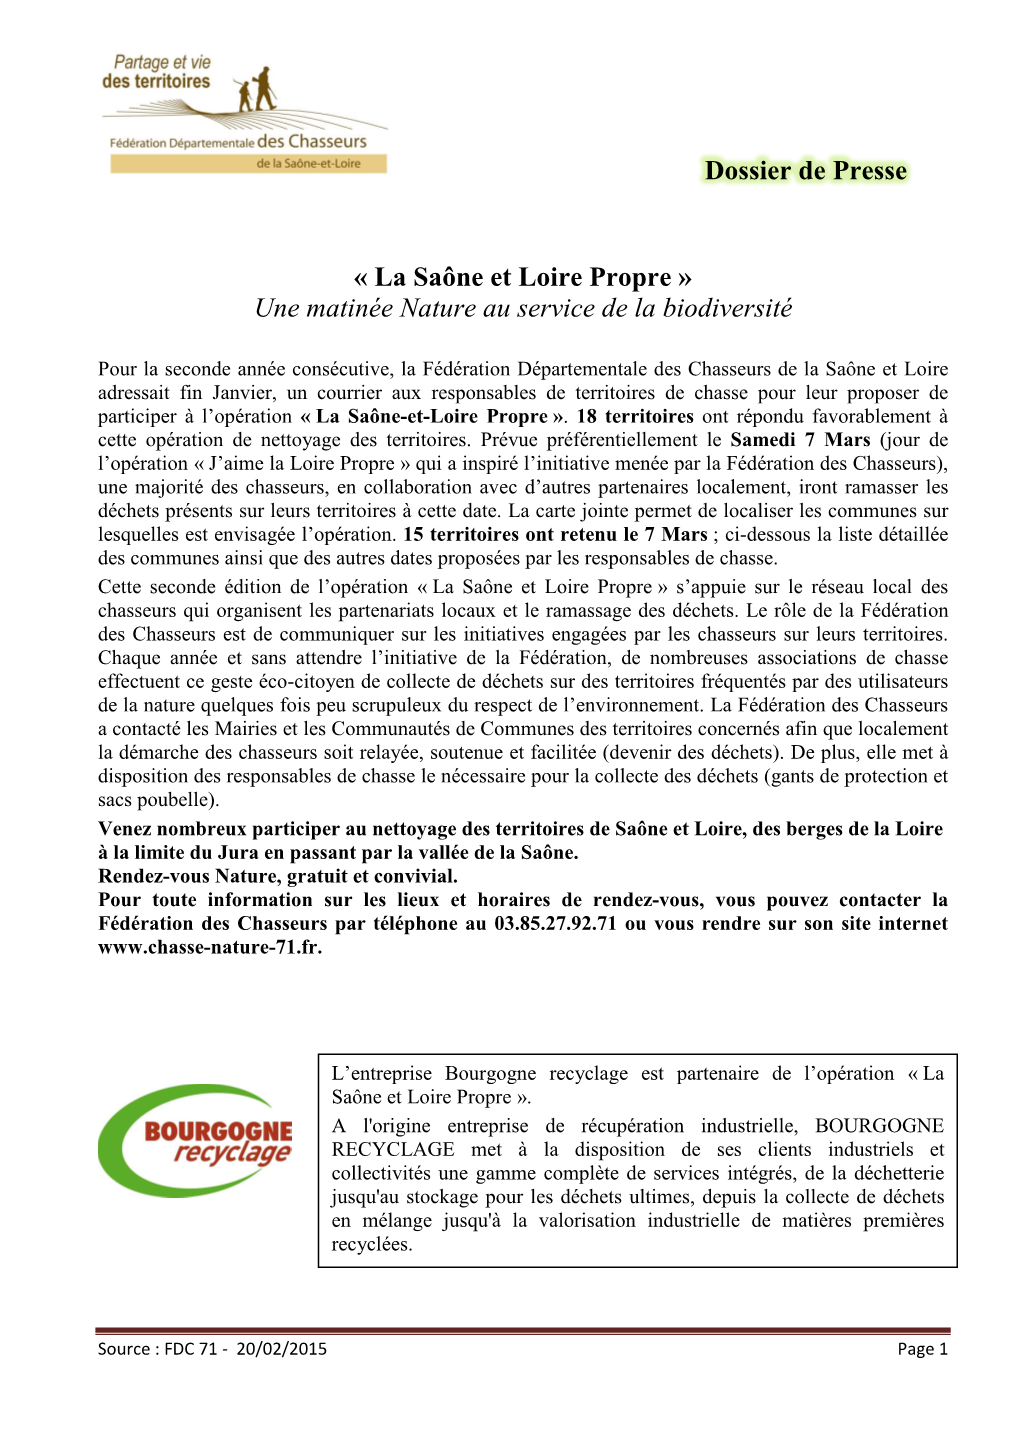 Dossier De Presse De L'opération Saône-Et-Loire Propre 2015